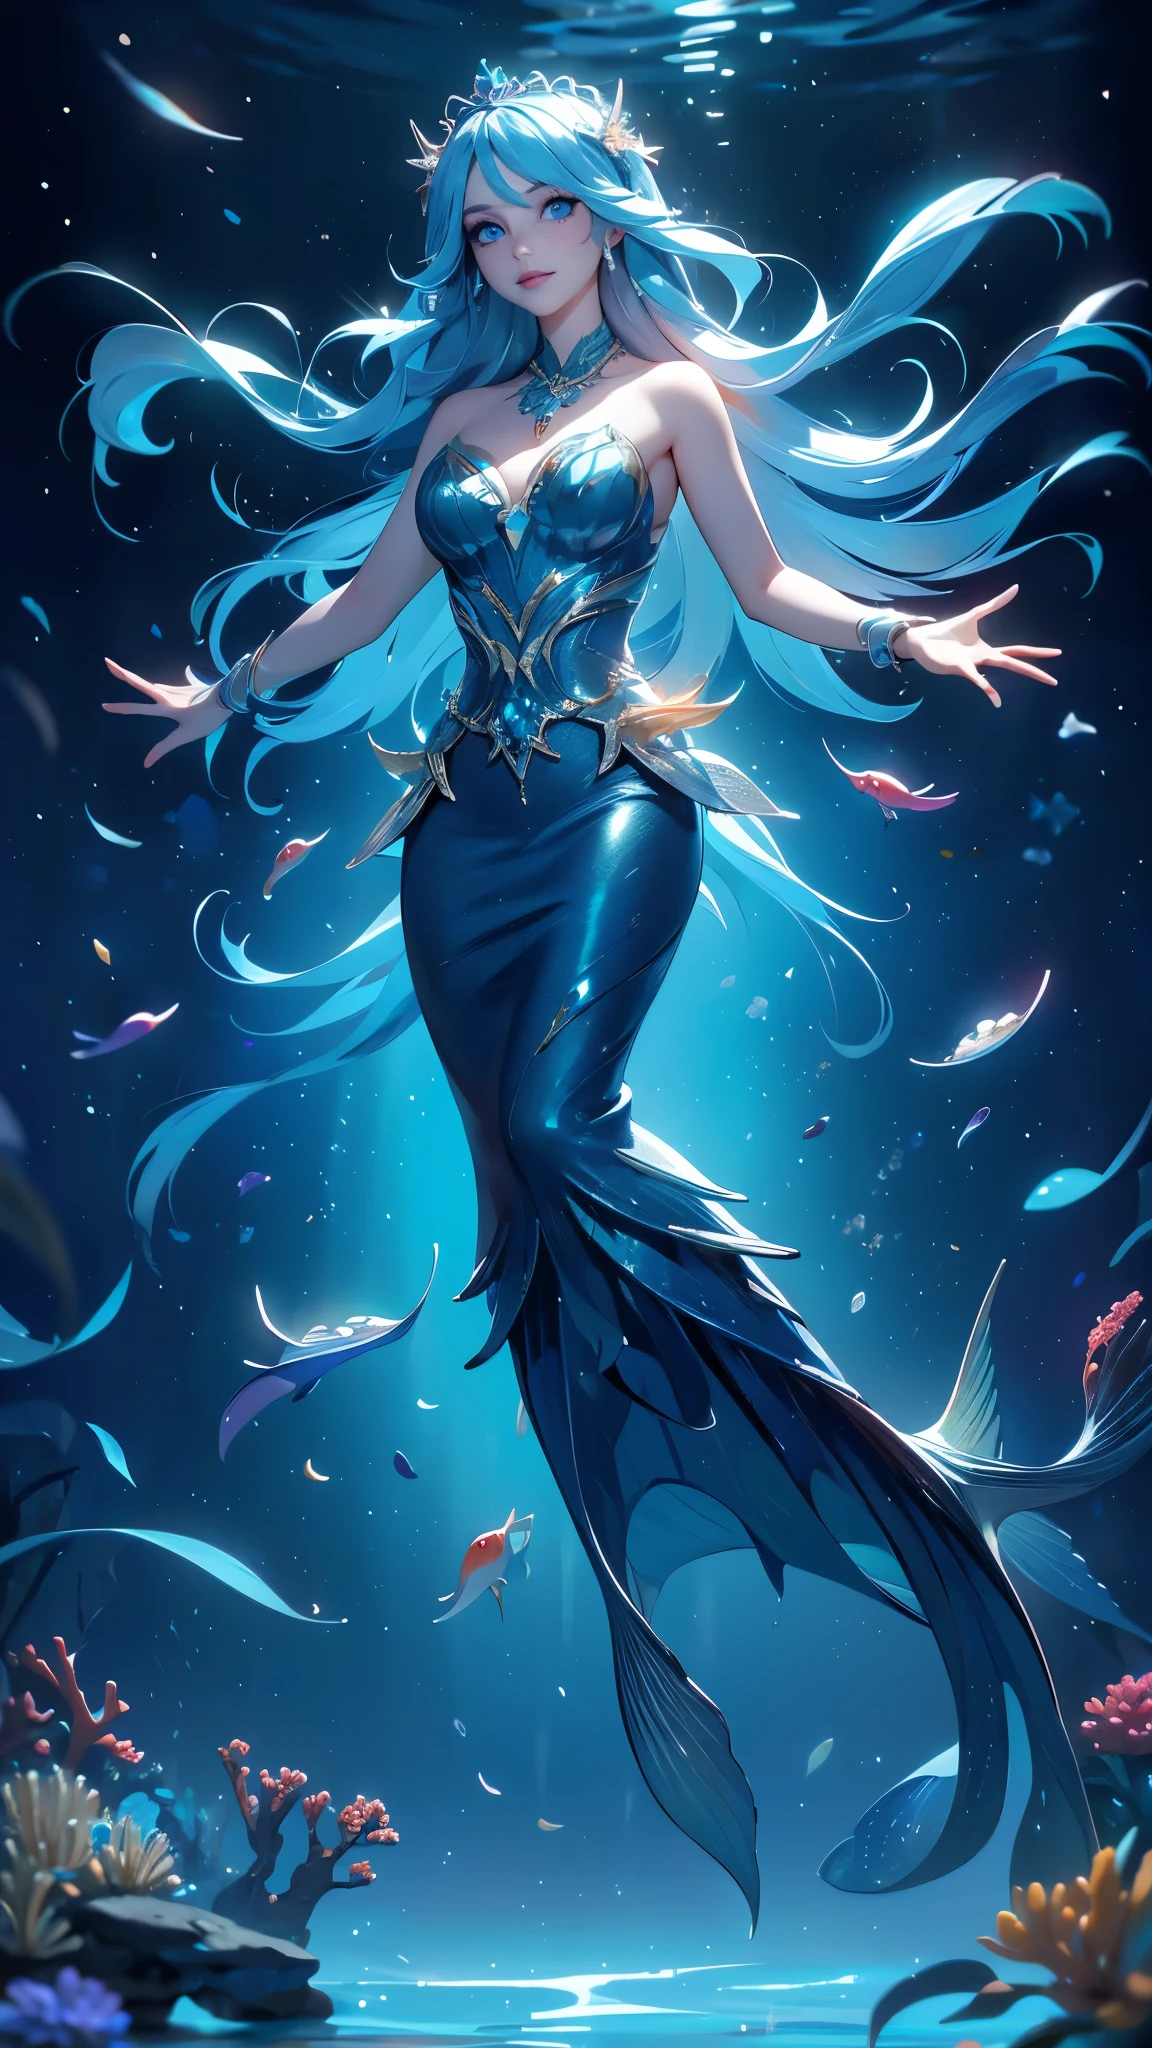 Realistisches Foto, bestmögliche Qualität, ultra-realistisch, Meer, Meerbed, Unterwasser, Korallen und Riffe, a Meerjungfrau, Eine schöne junge Frau, mit zufällig im Wasser schwimmenden Haaren, Von der Taille bis zu den Zehen, sie hat einen Fischschwanz, Meerjungfrau, Schwimmen mit Fischschwärmen, (Sirena v2.1),( hat einen großen Fischschwanz ), (Schöne blaue Augen :1.4) 